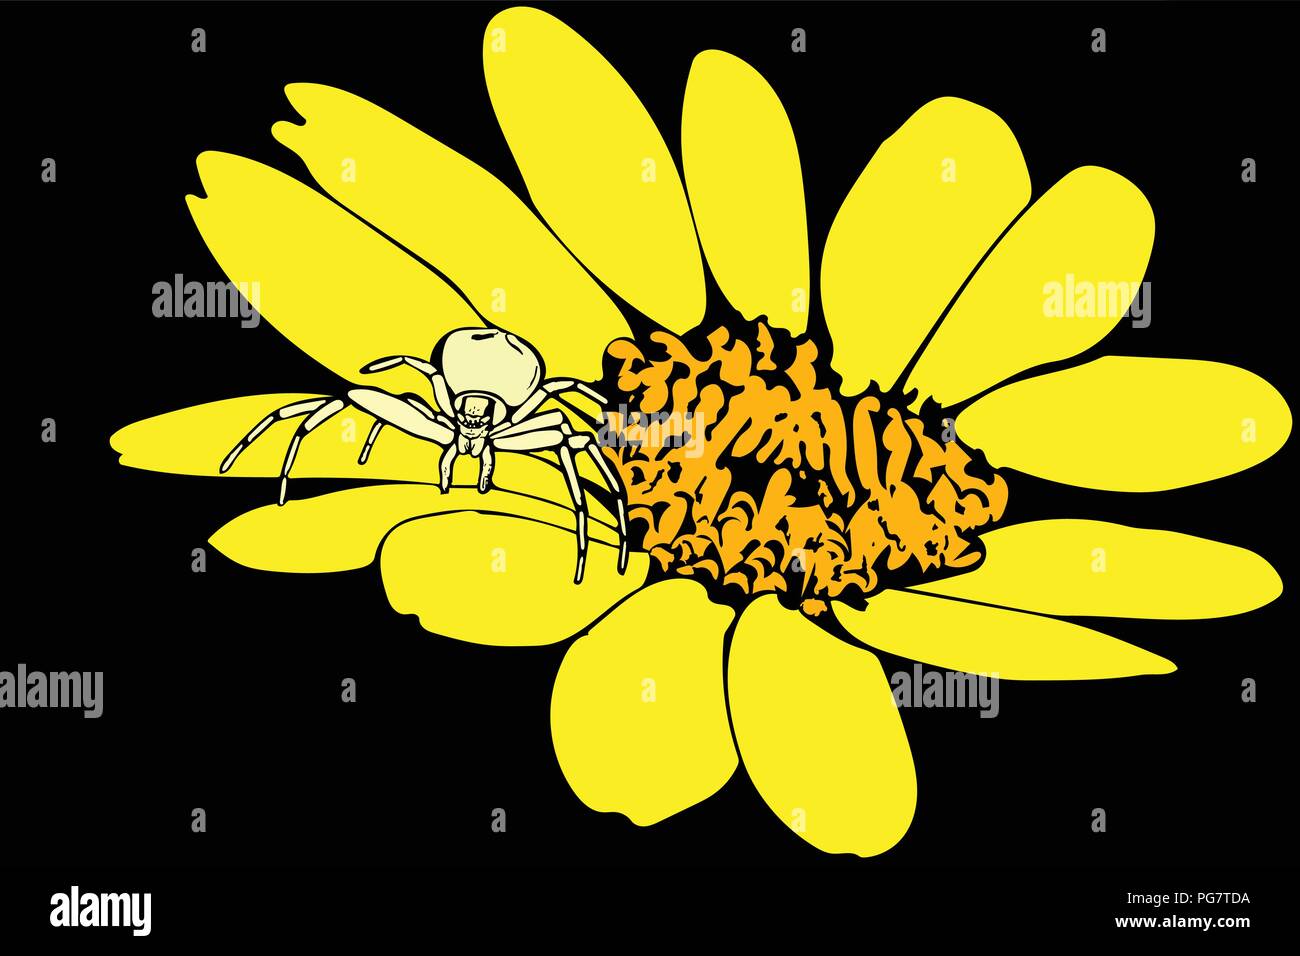 Farbige Vektorgrafik Crab Spider auf gelbe Blüten auf schwarzem Hintergrund. Stock Vektor